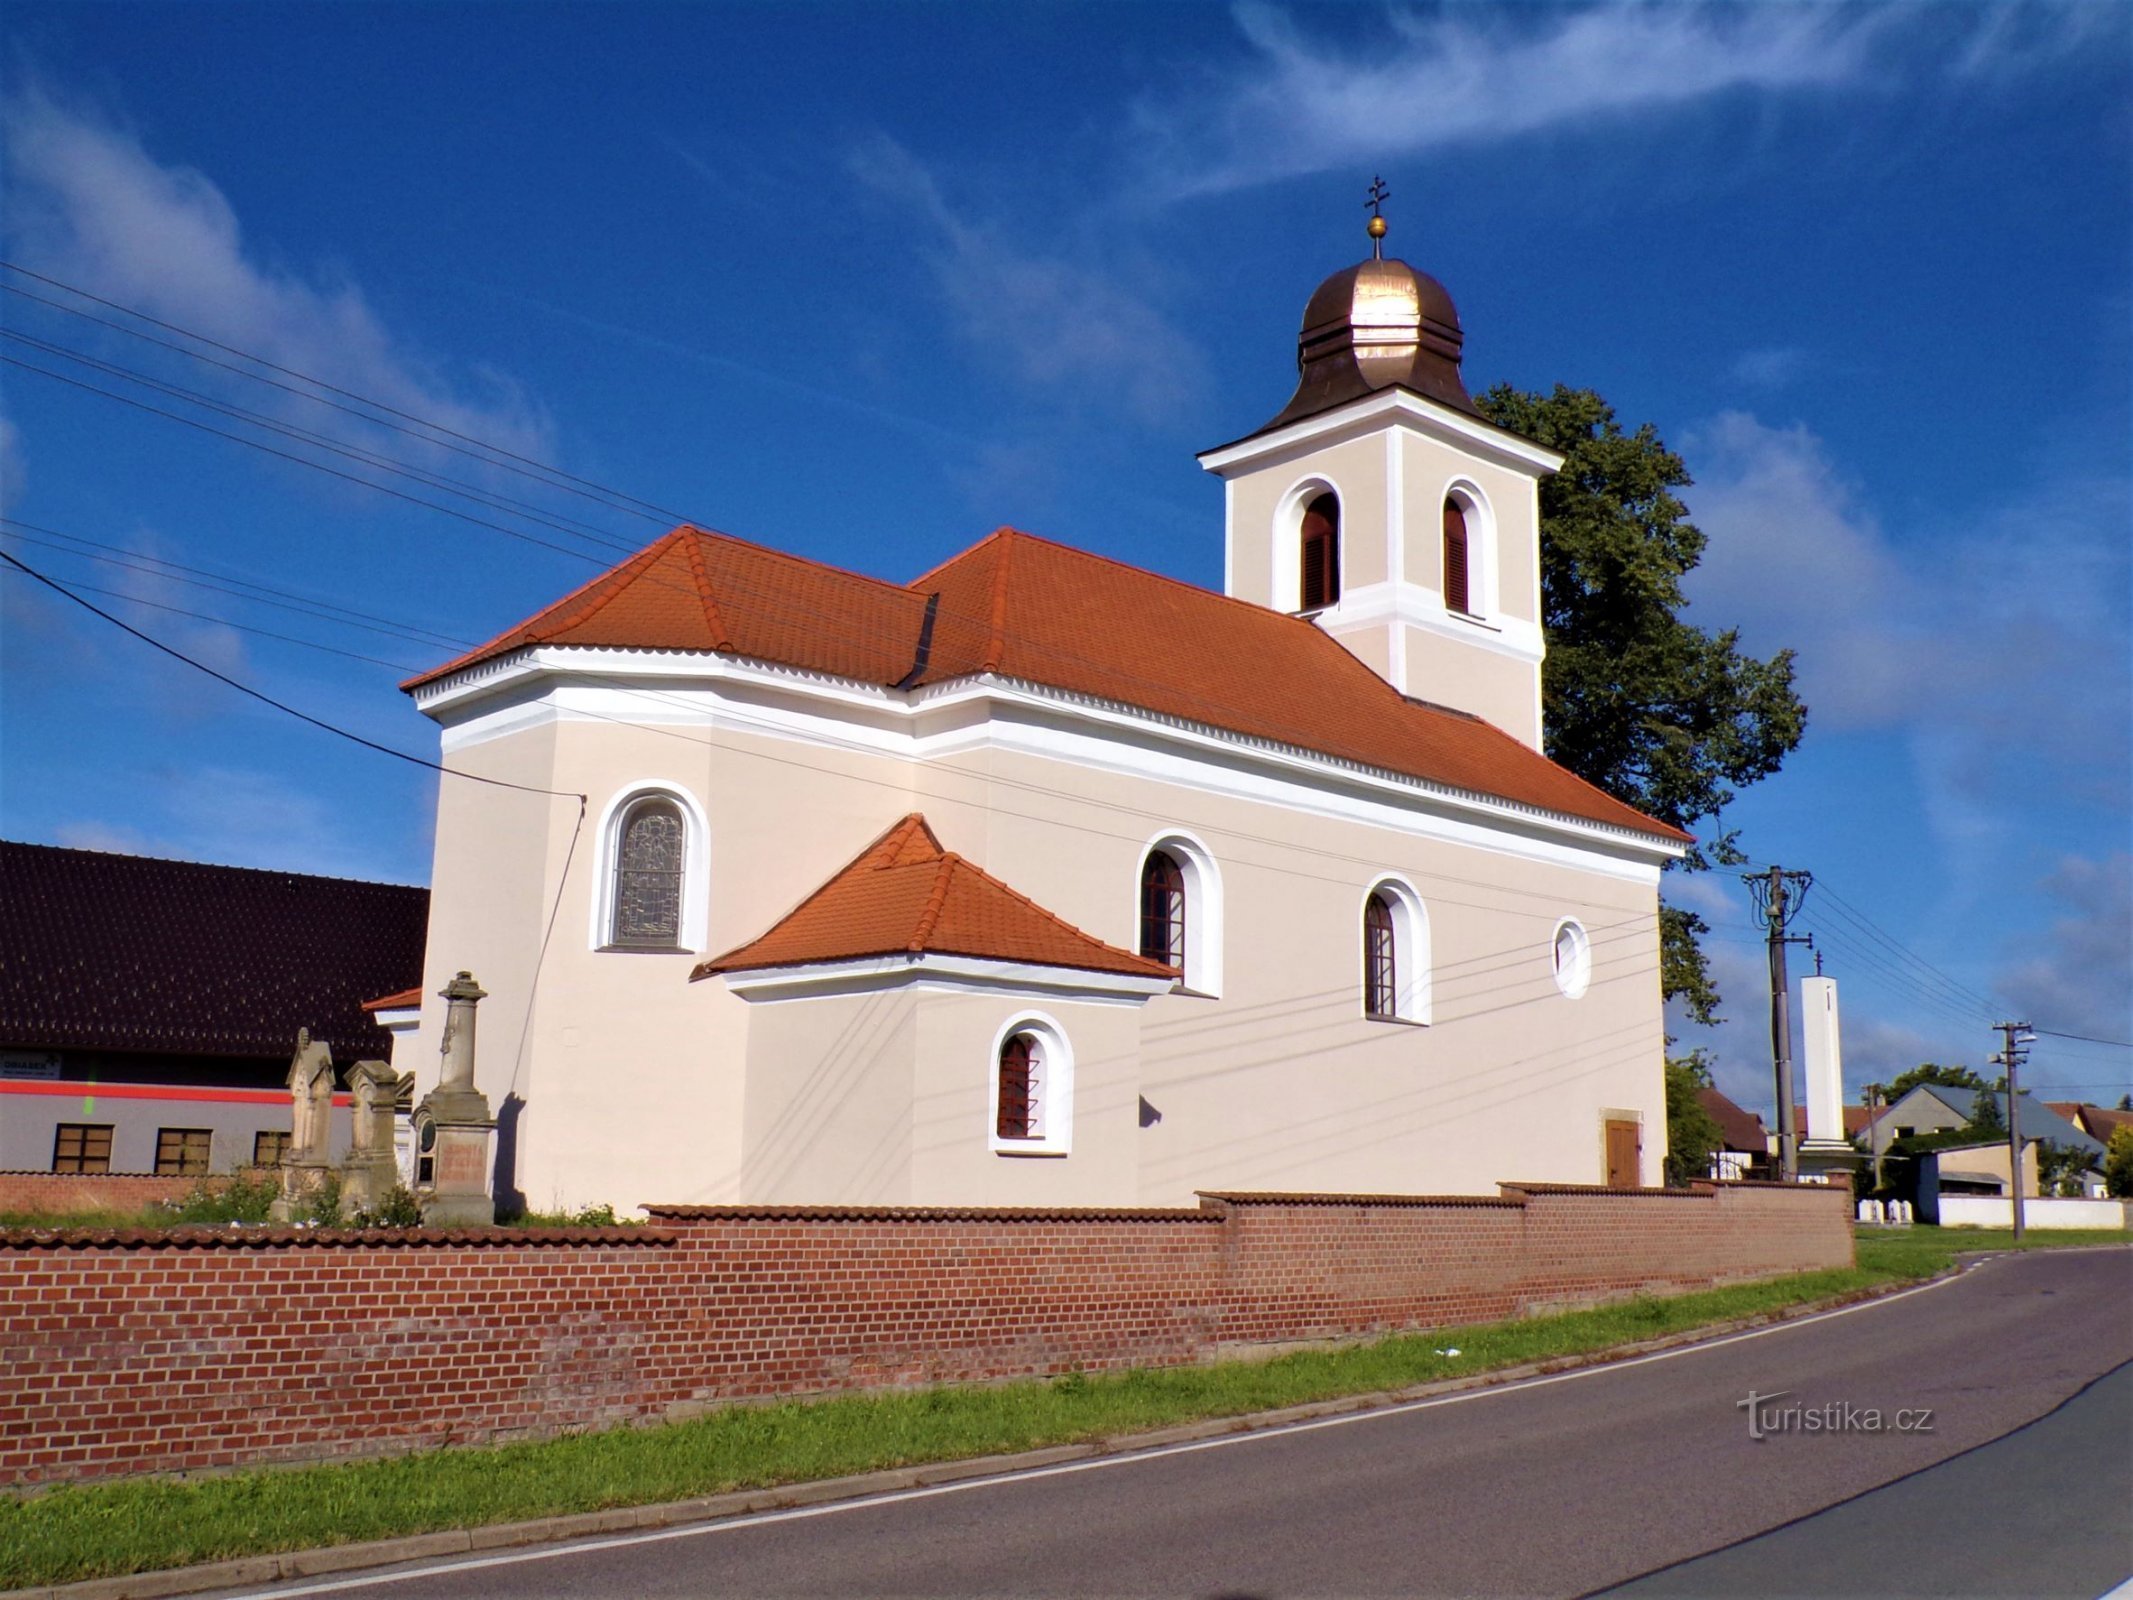 Den heliga treenighetens kyrka (Praskačka, 9.8.2021-XNUMX-XNUMX)